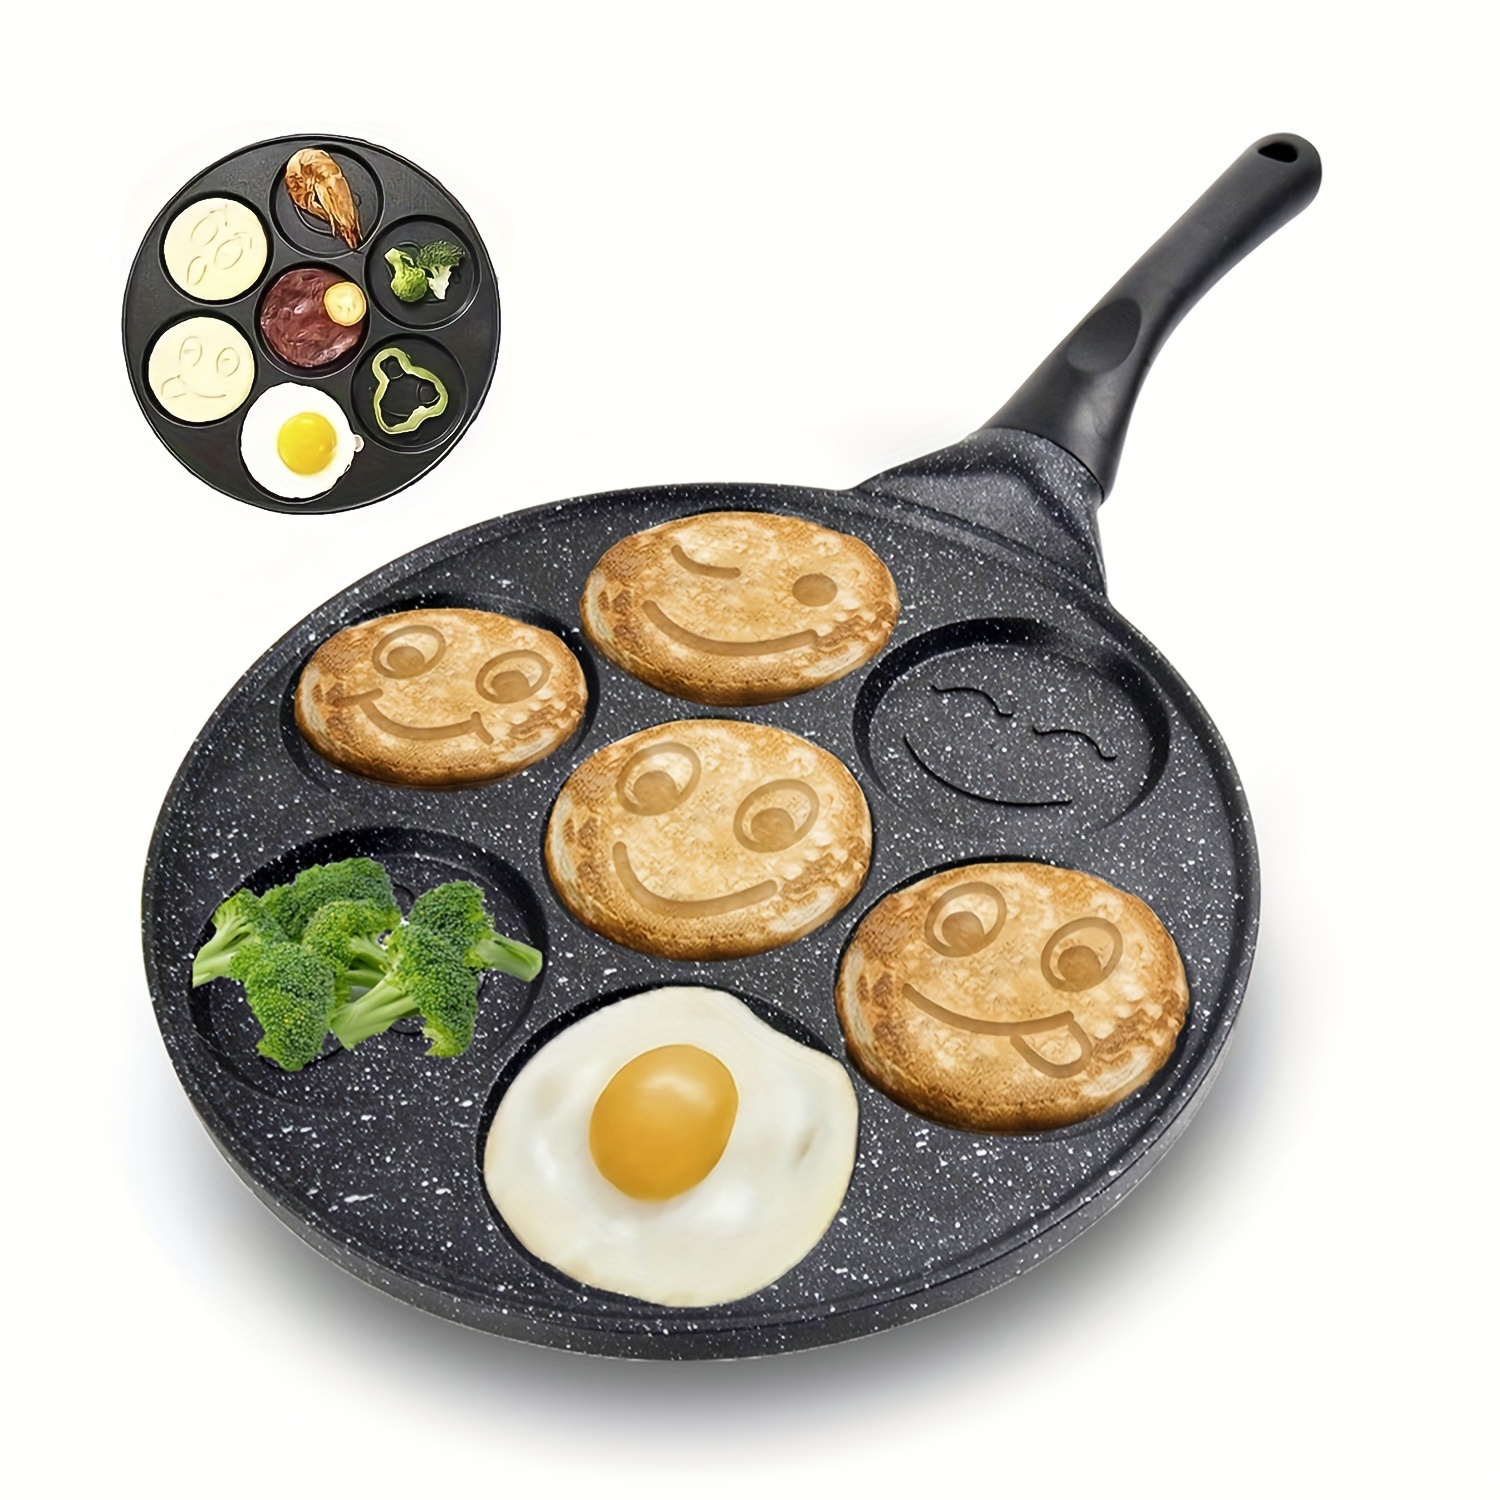 Pancake Maker Pancake Pan for Kids Pancake Griddle Induction Pan